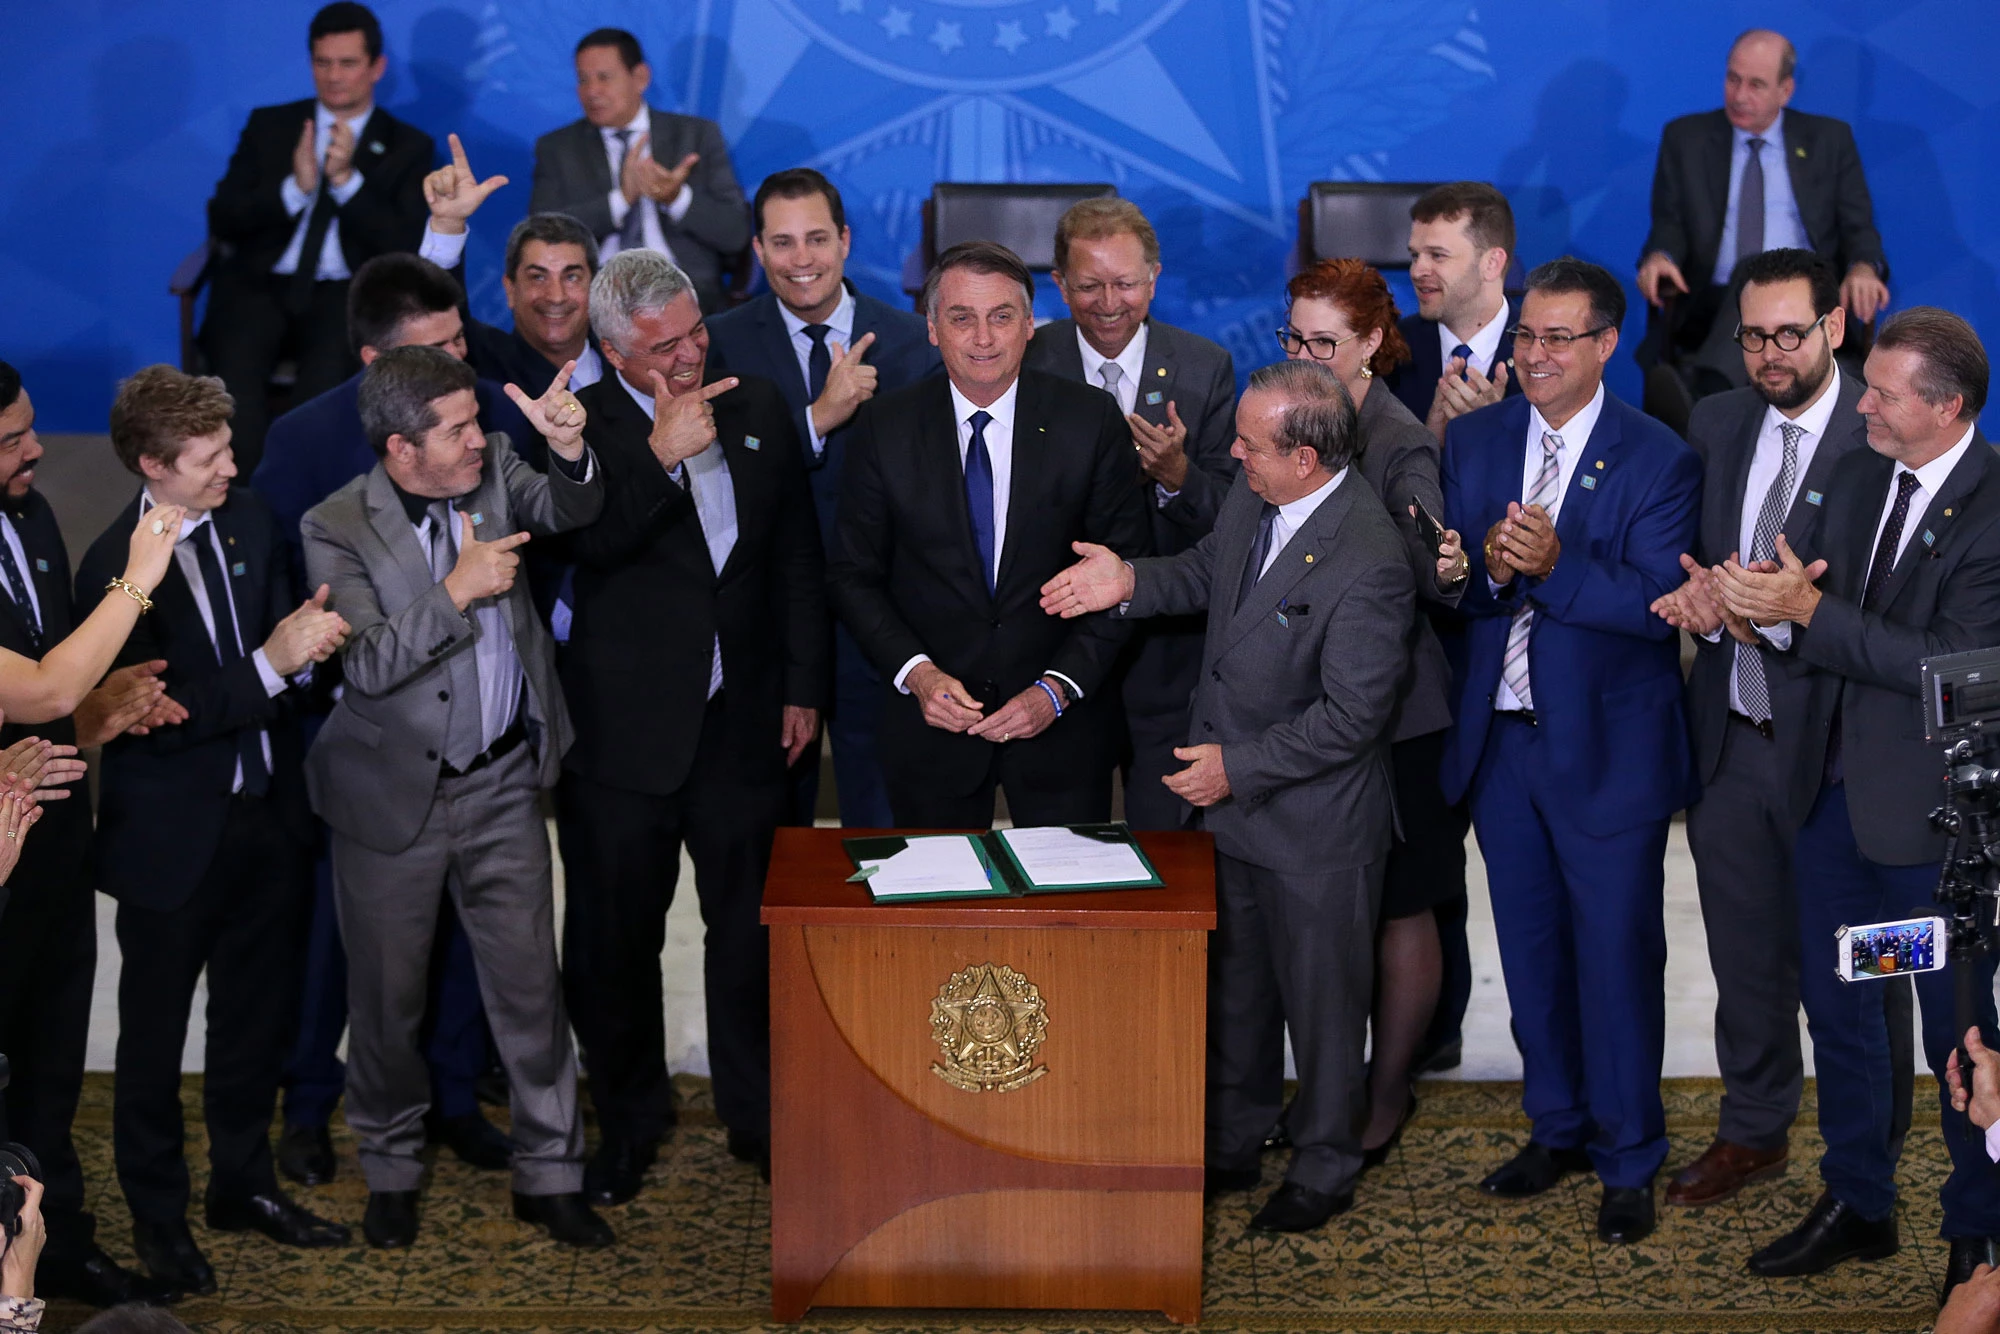 O presidente Jair Bolsonaro, acompanhado de deputados favoráveis à projetos de flexibilização do controle de armas, durante assinatura de decreto presidencial que flexibiliza regras para atiradores esportivos, caçadores e colecionadores de armas.